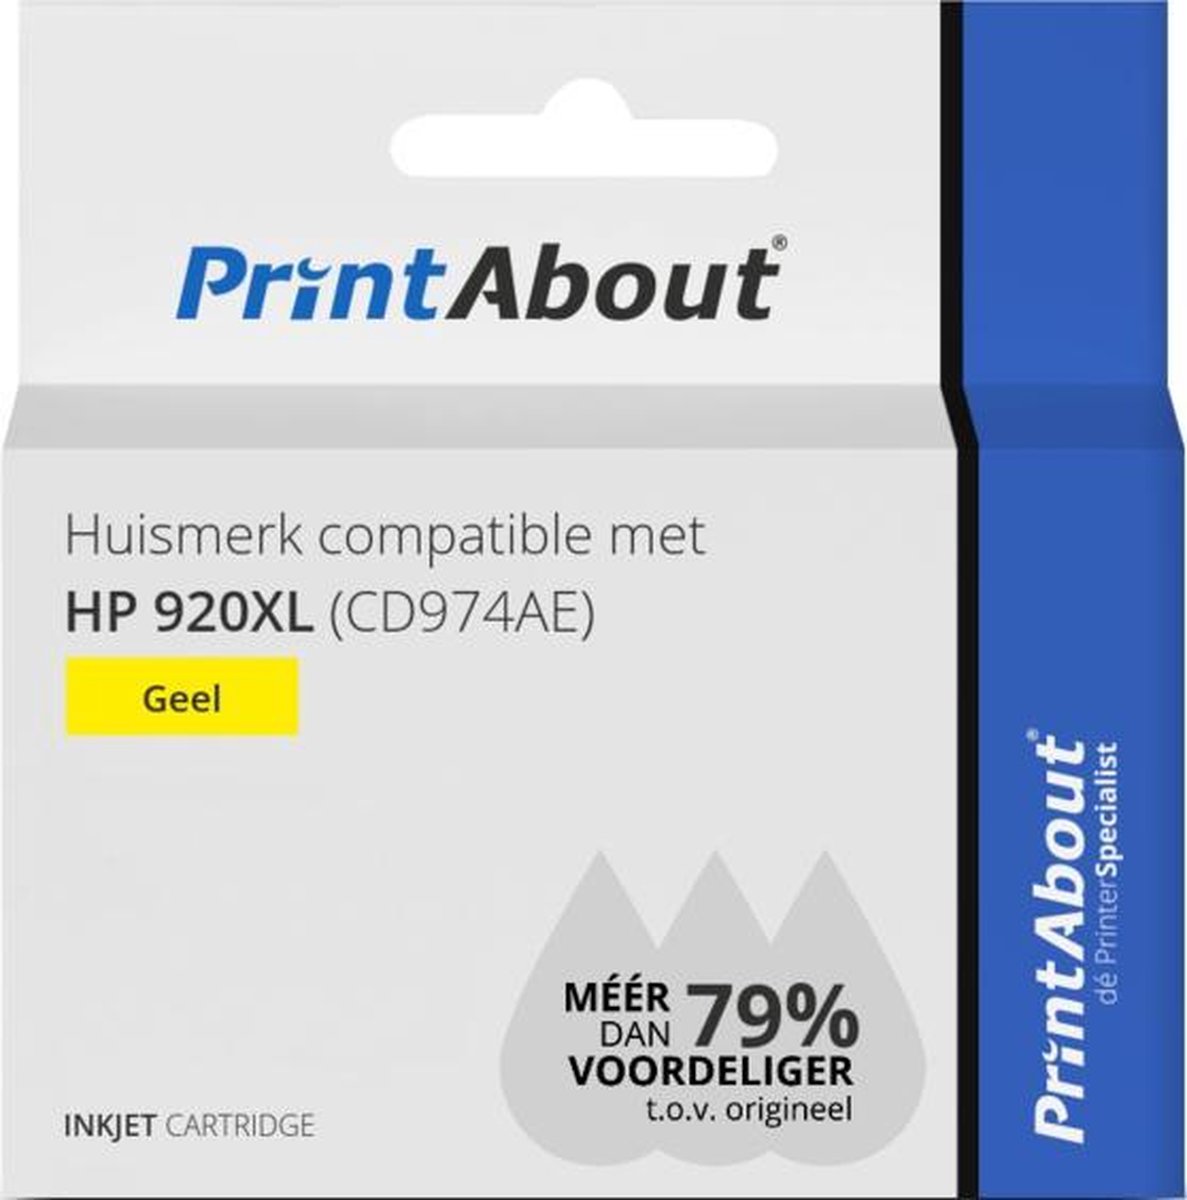 PrintAbout Huismerk compatible met HP 920XL (CD974AE) Inktcartridge Hoge capaciteit - Geel